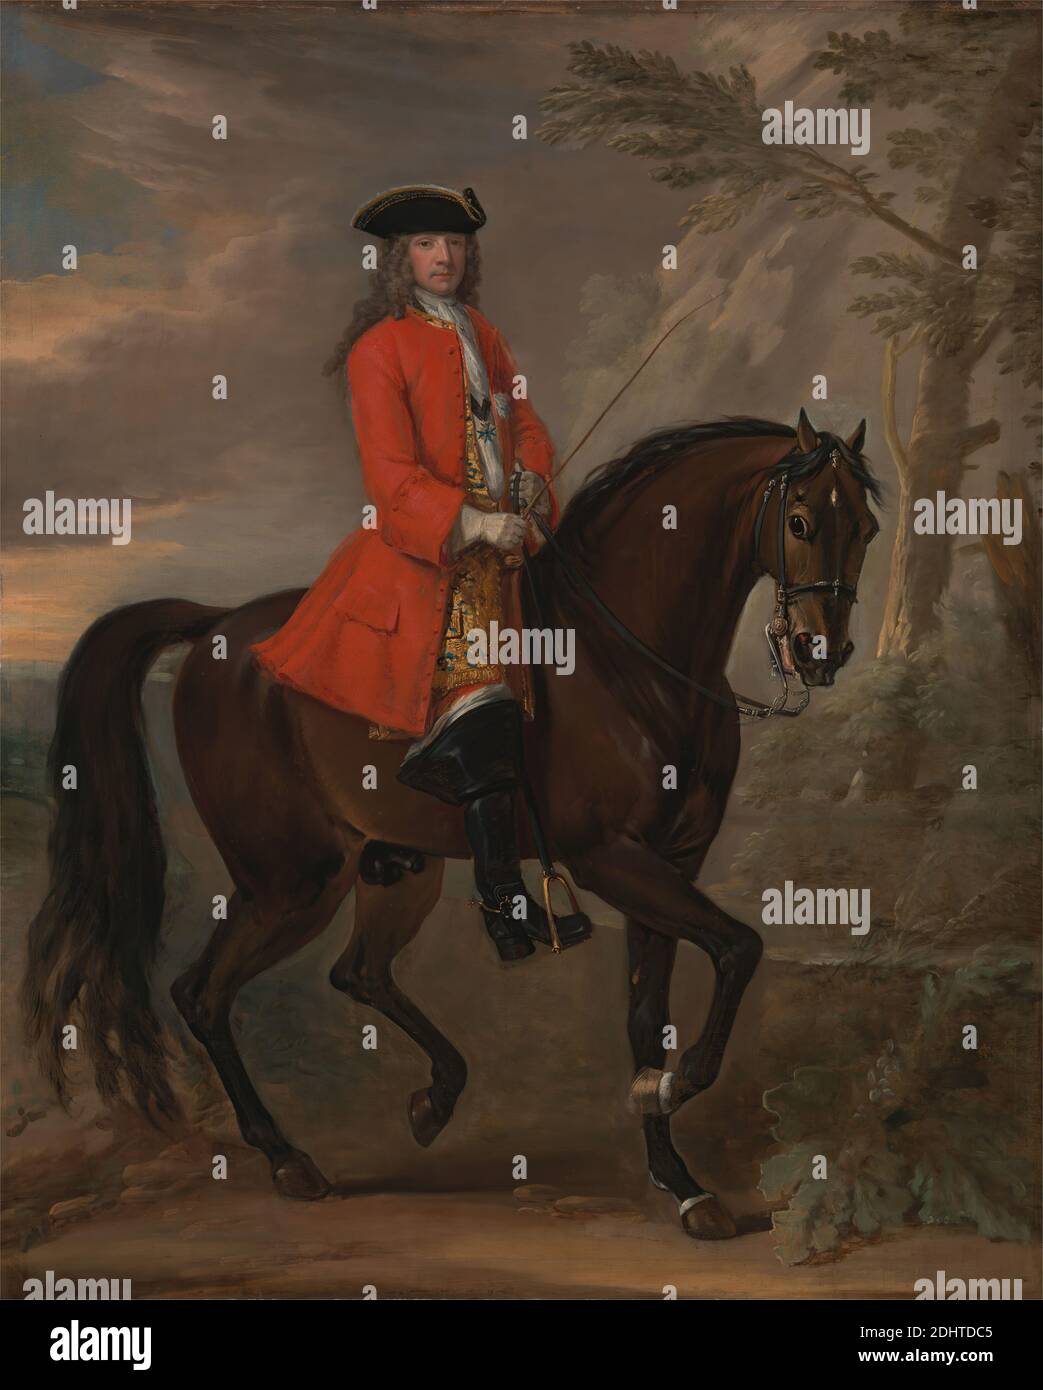 Portrait of a man on Horseback, John Wootton, 1682–1764, britisch, ca. 1740, Öl auf Leinwand, Stütze (PTG): 50 1/4 × 40 1/8 Zoll (127.6 × 101.9 cm), Hose (Hose), Brokat, Wolken, Cravat, Locken, Reiten, Pferd (Tier), Mann, Porträt, redingote (Mantel), Zügel, Reitstiefel, Rüschen, Sporen, Kelle, Steigbügel, Baum, Tricorne, Weste, Wasser Stockfoto